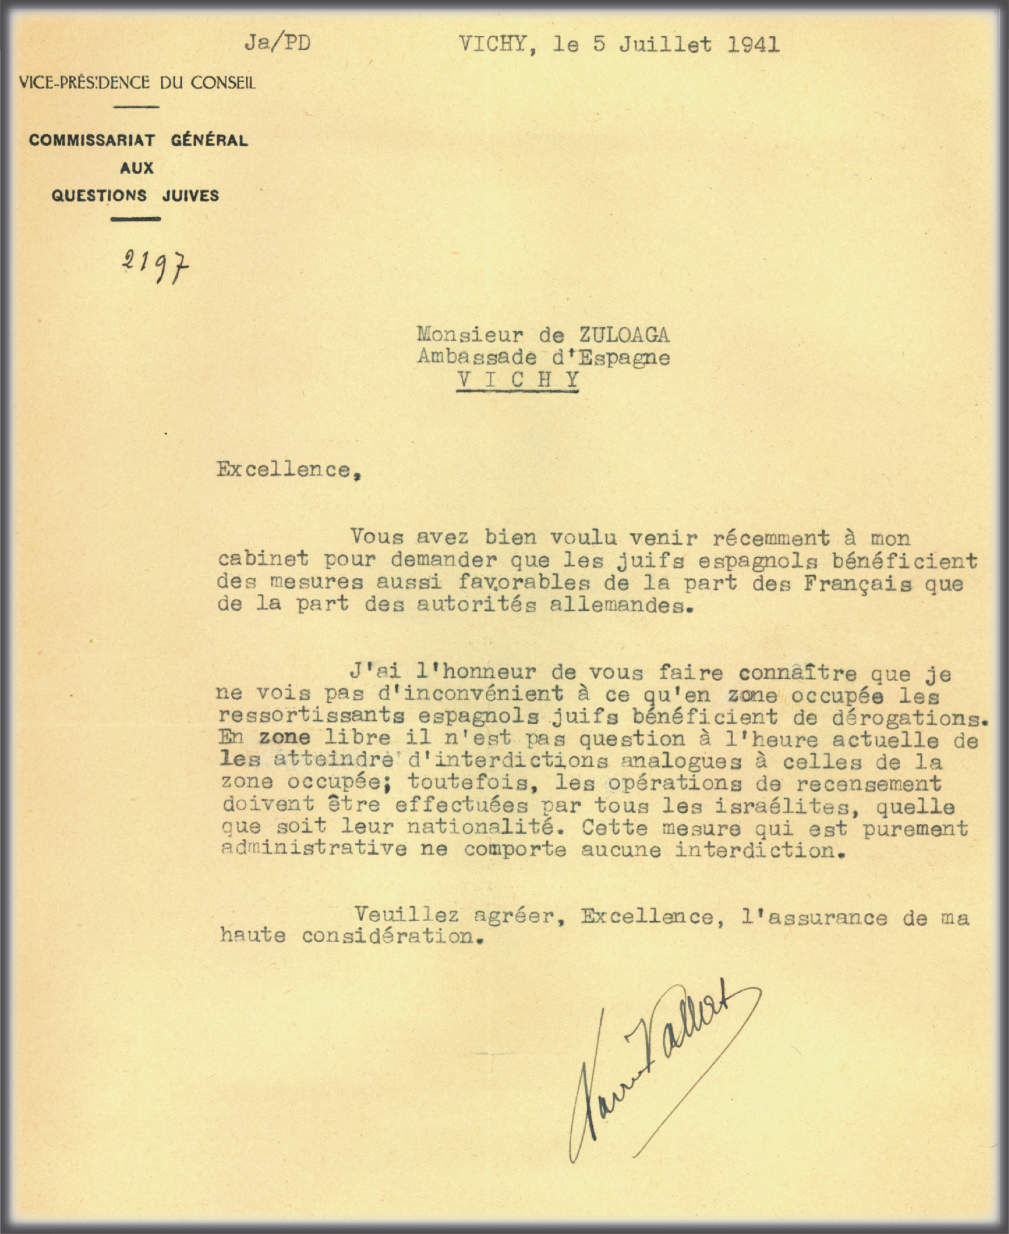 Vēstule no Ksavjera Valā, Ebreju lietu Ģenerālkomisariāta vadītāja, kurā viņš ziņo par Antonio Zuloagas darbību Višī.